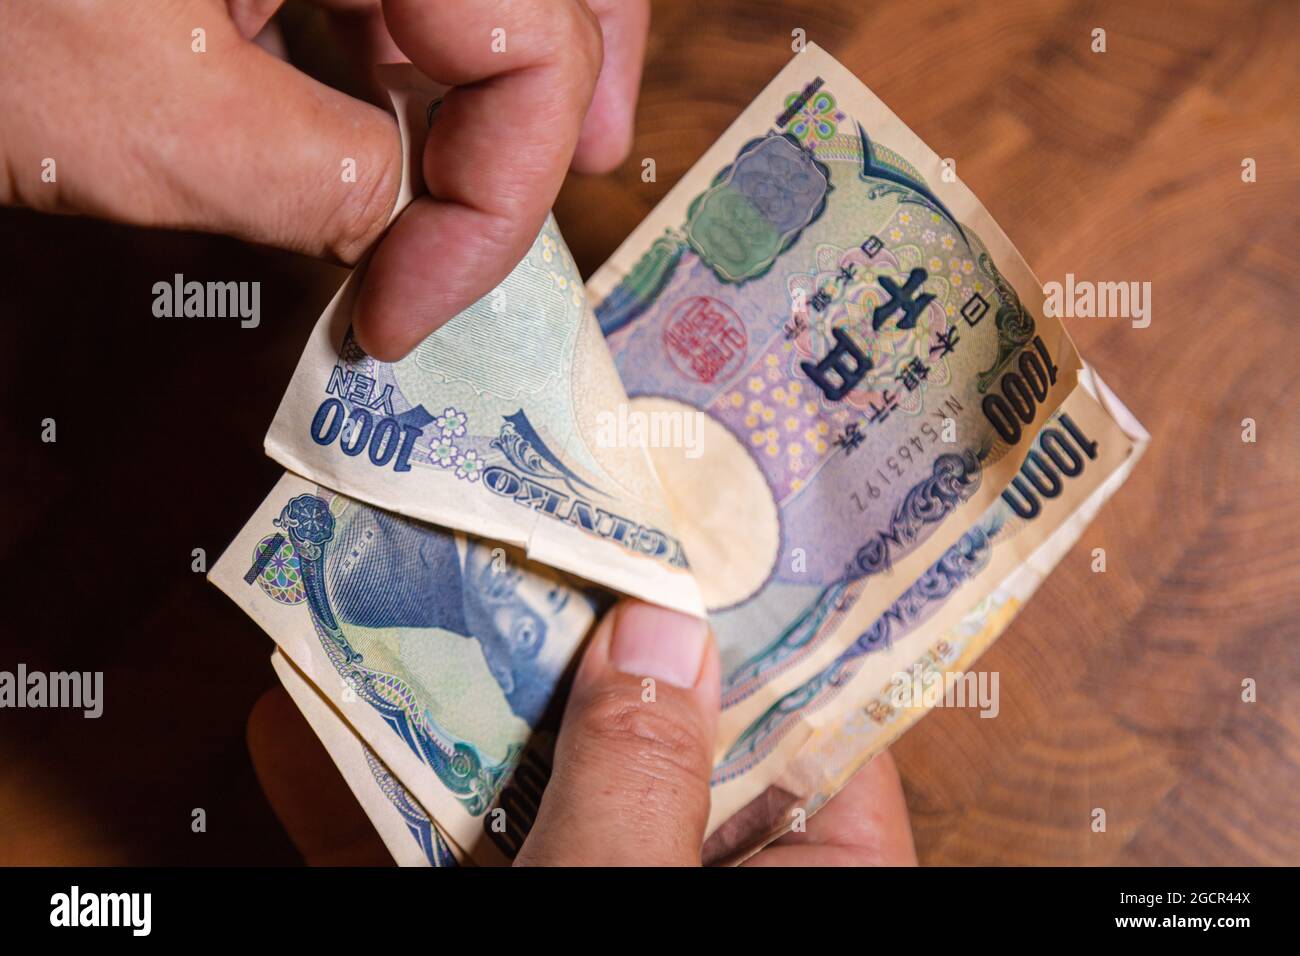 Männliche Hände zeigen japanischen Yen. Yen ist die Währung Japans. Auf der Vorderseite der Banknoten Hideyo Noguchi, Bakteriologe aus dem 20. Jahrhundert Stockfoto